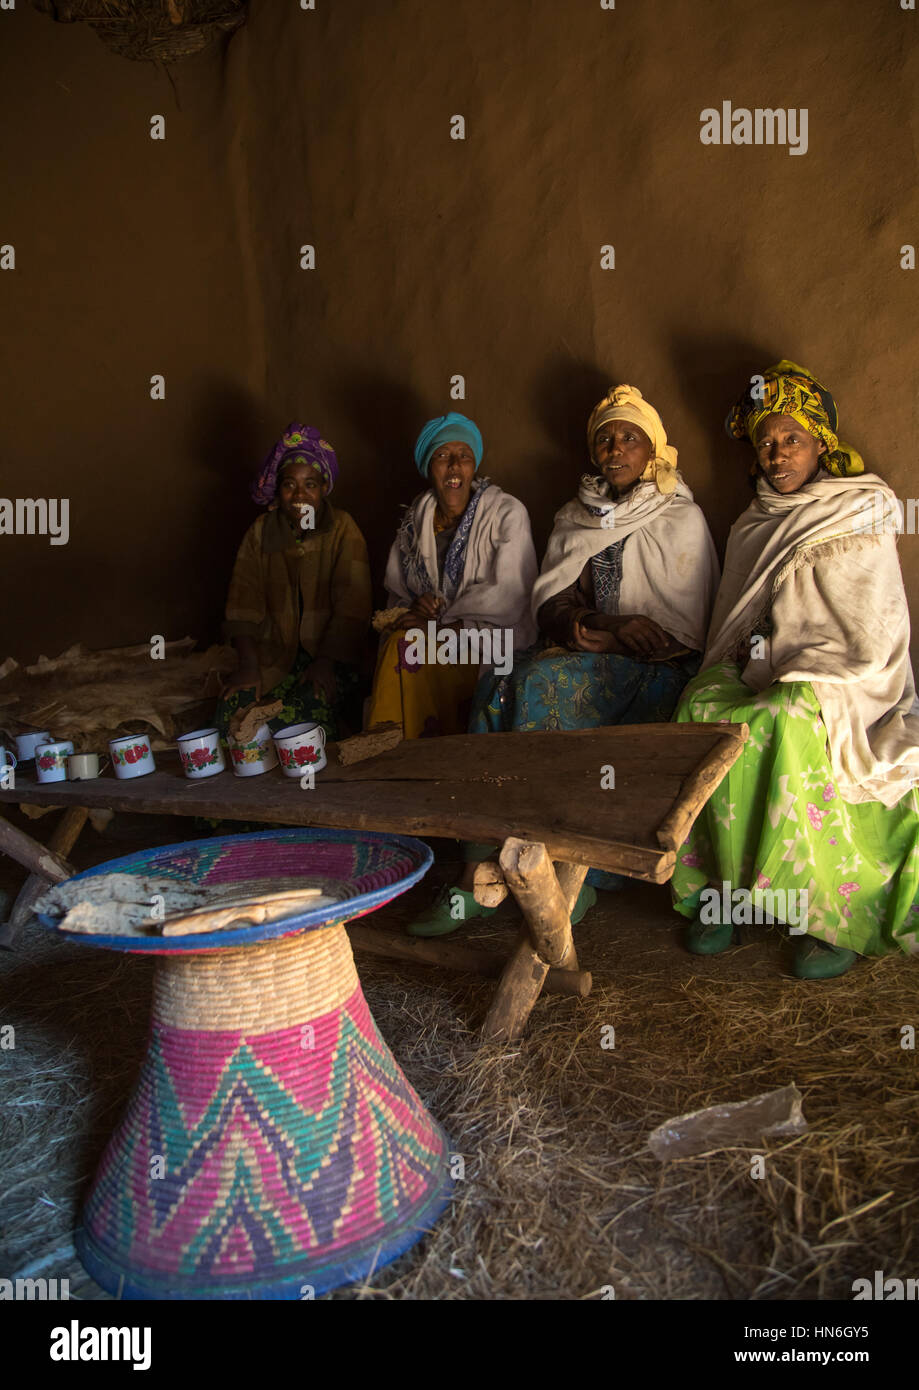 Les femmes éthiopiennes de la région des Highlands dans une maison à partager un verre et manger du pain, région d'Amhara, Debre Birhan, Ethiopie Banque D'Images